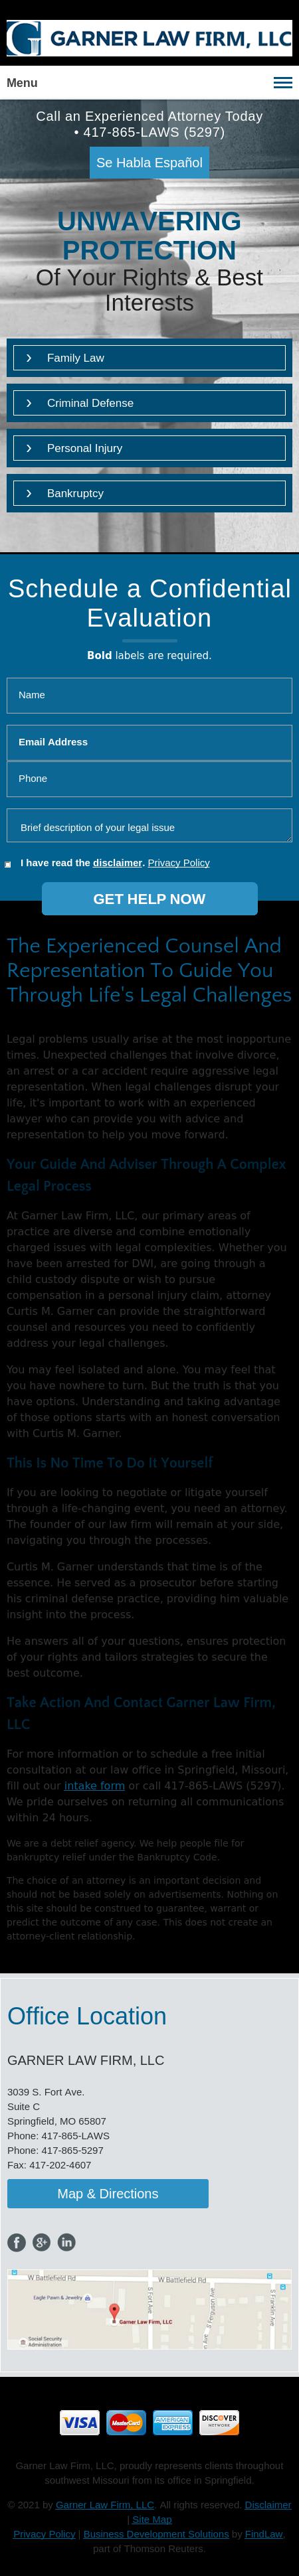 Garner Law Firm, LLC - Springfield MO Lawyers